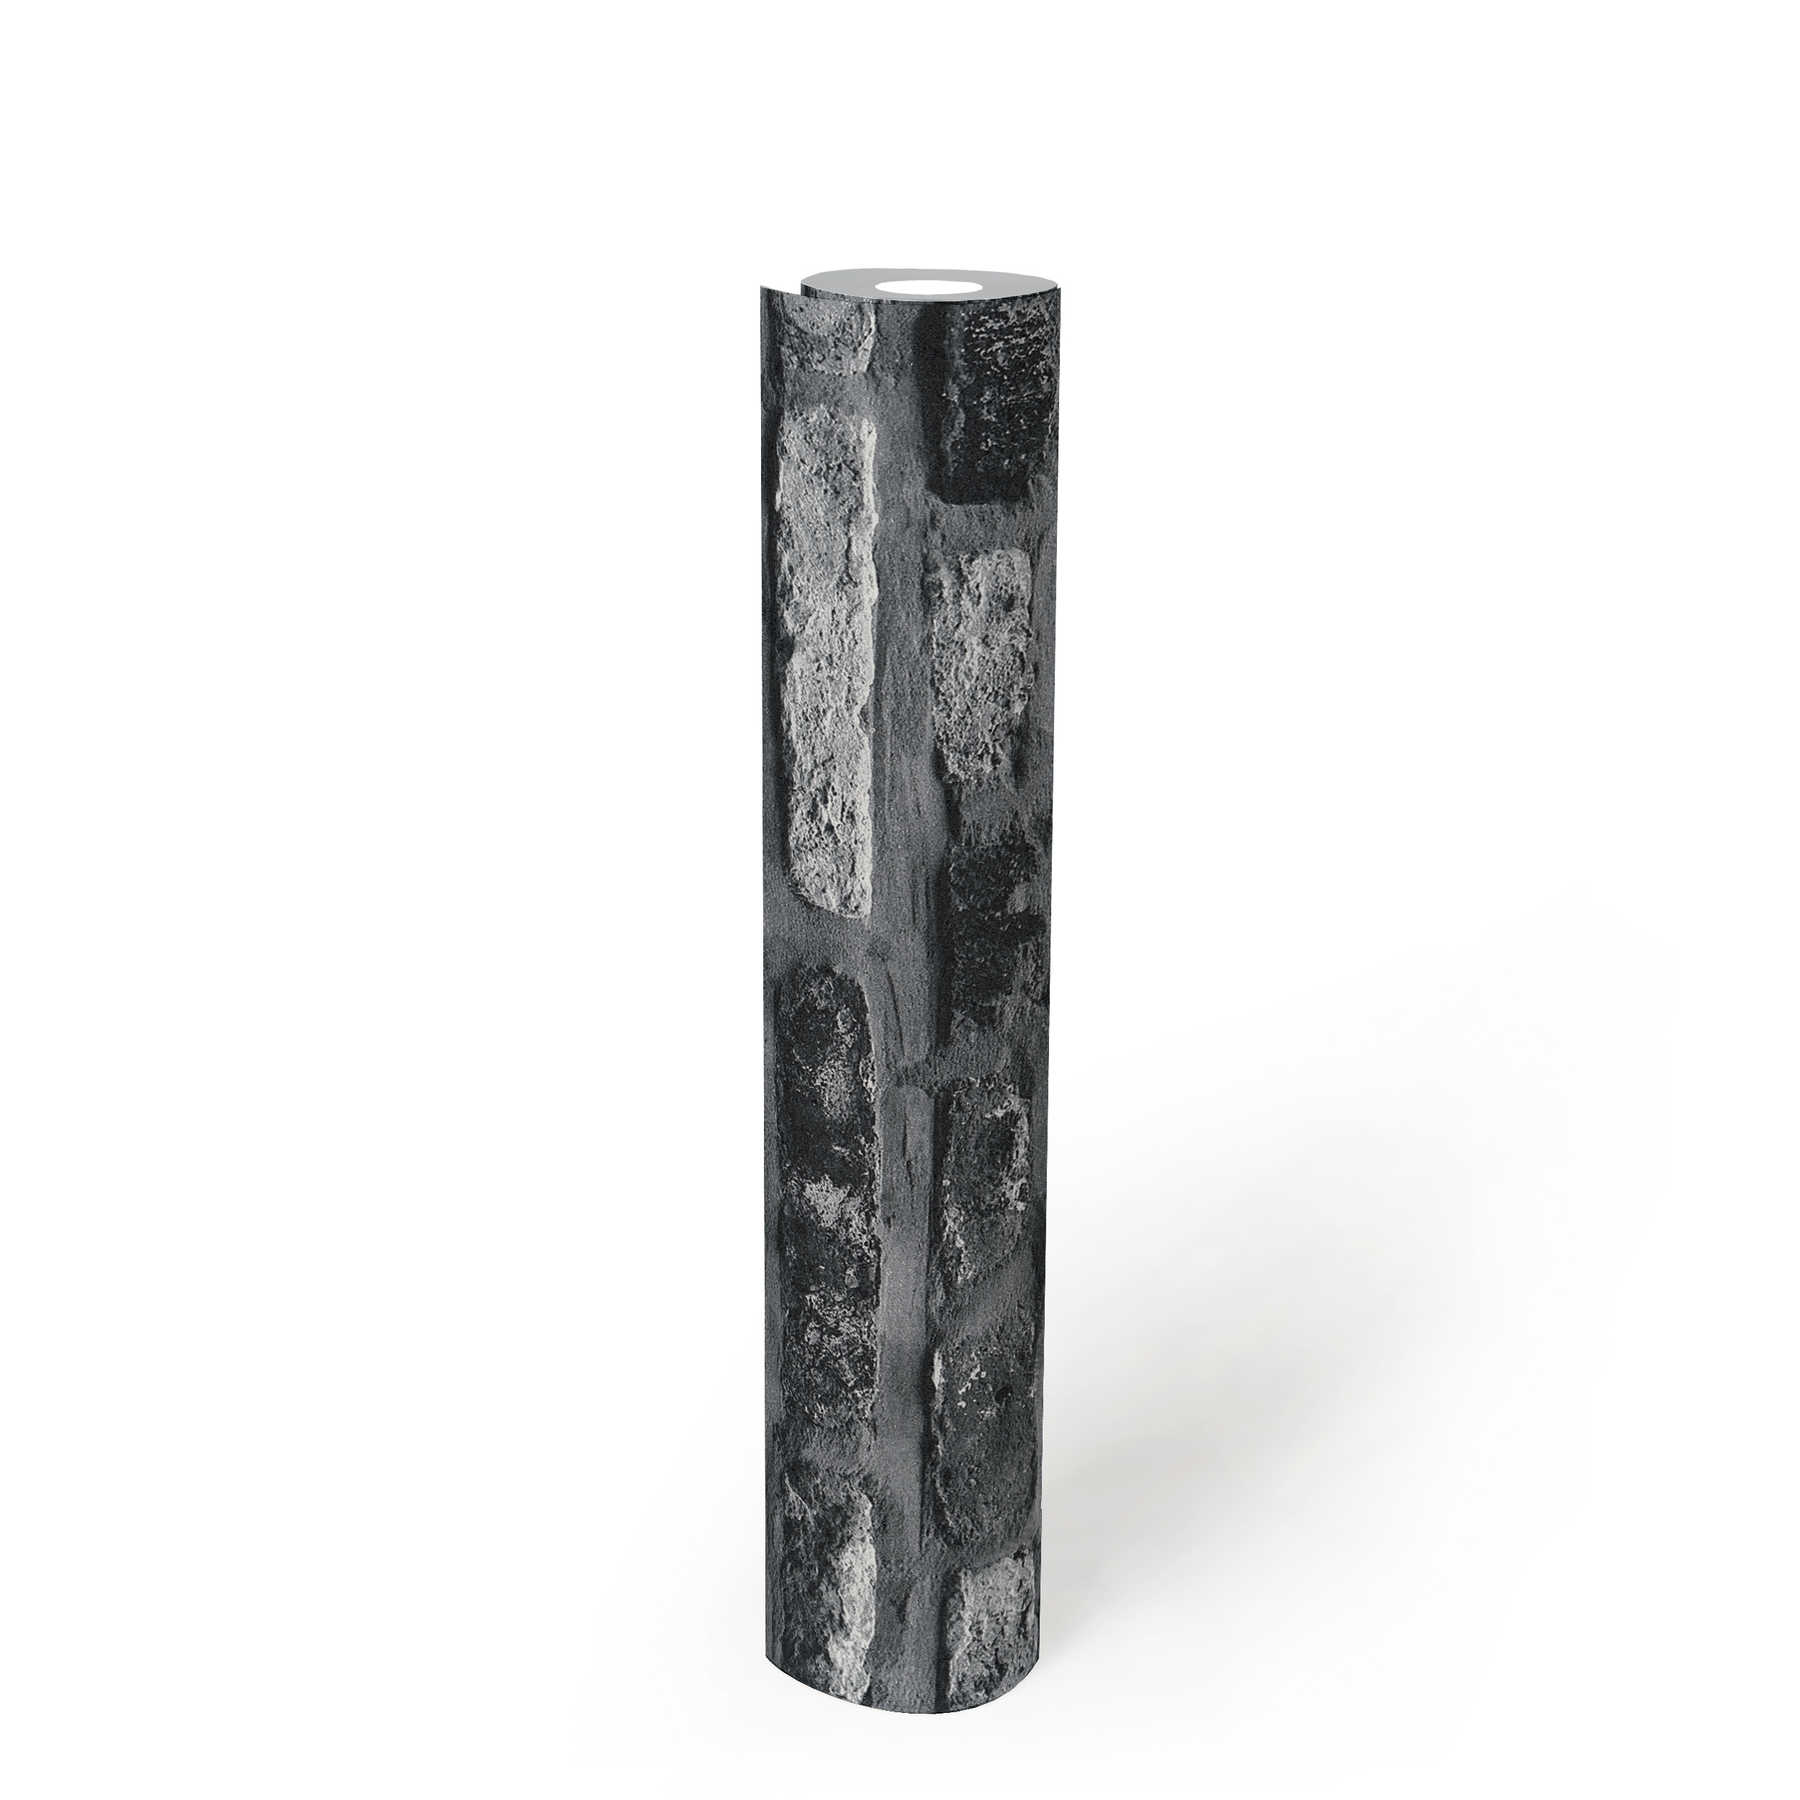             Papel pintado no tejido con aspecto de piedra, ladrillo oscuro - gris, negro
        